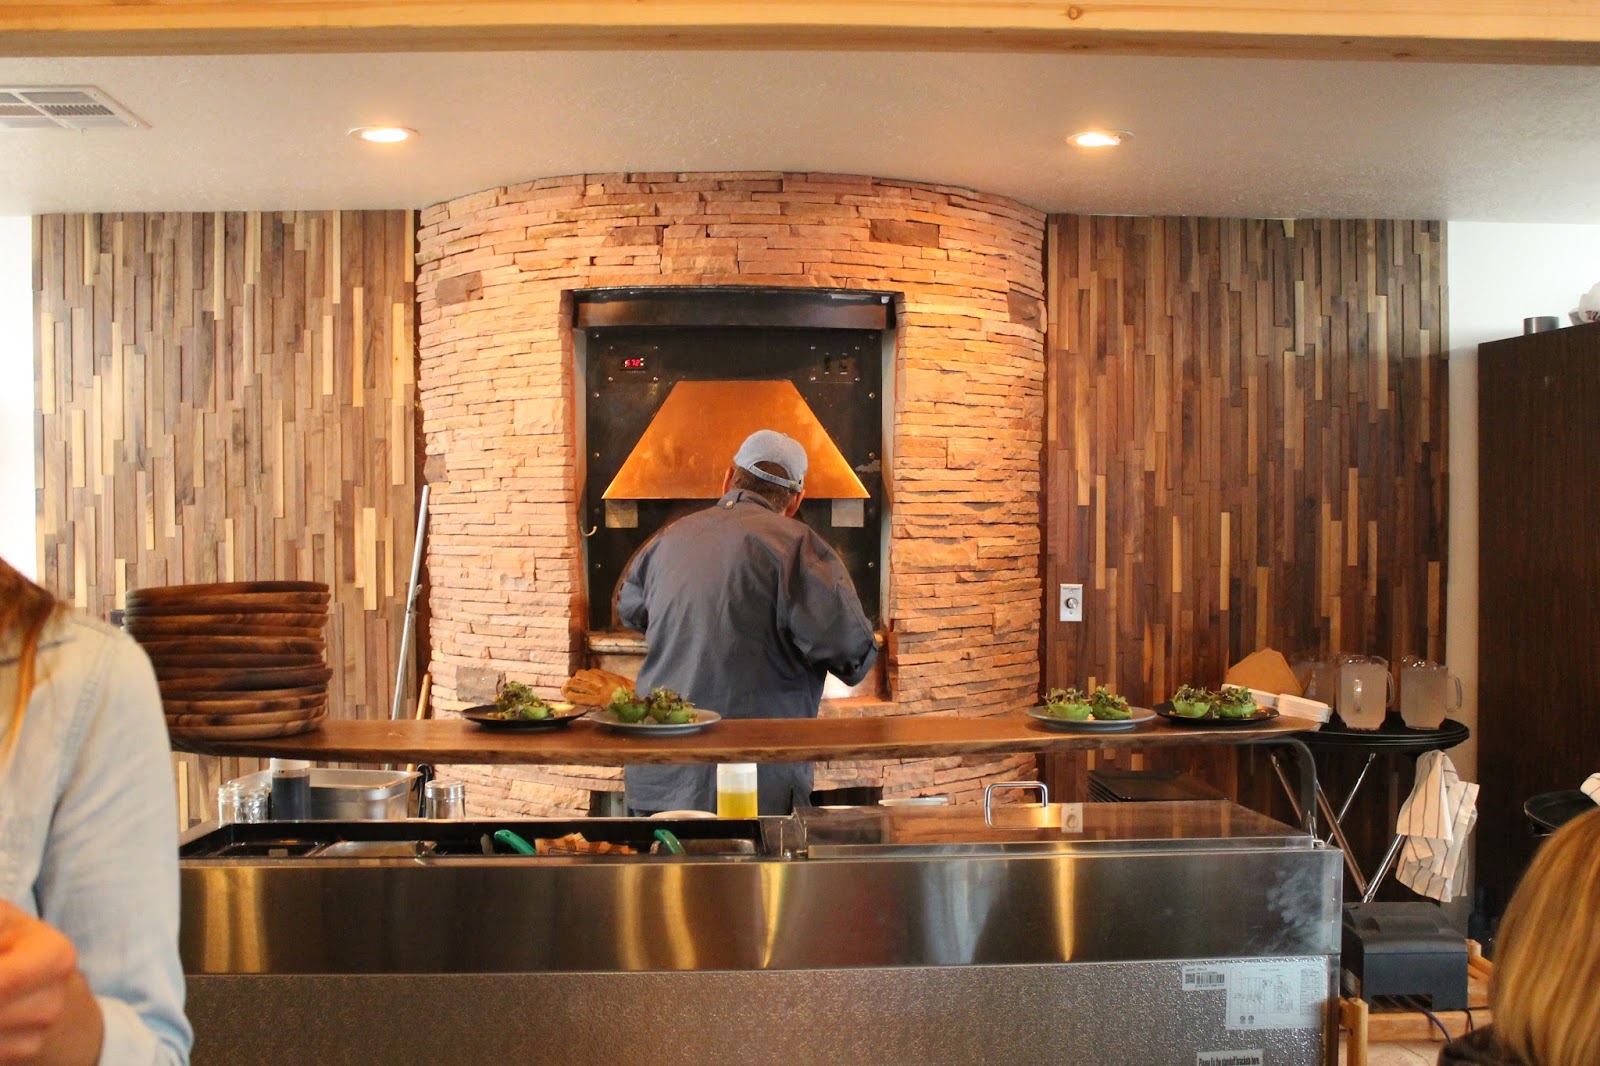 Peekaboo Canyon Wood Fired Kitchen